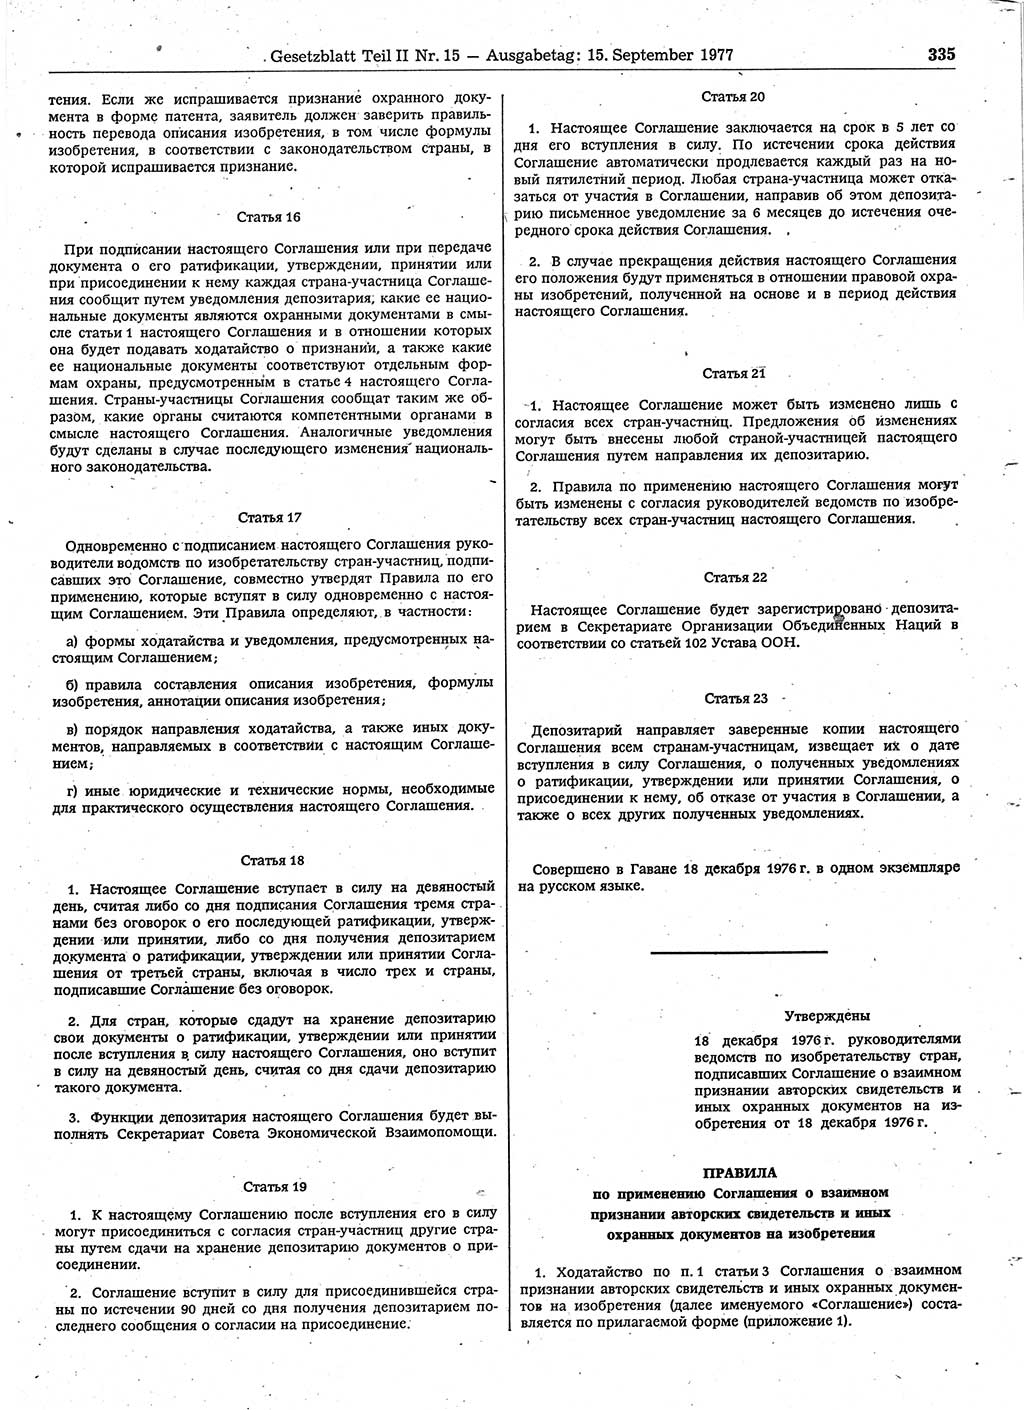 Gesetzblatt (GBl.) der Deutschen Demokratischen Republik (DDR) Teil ⅠⅠ 1977, Seite 335 (GBl. DDR ⅠⅠ 1977, S. 335)